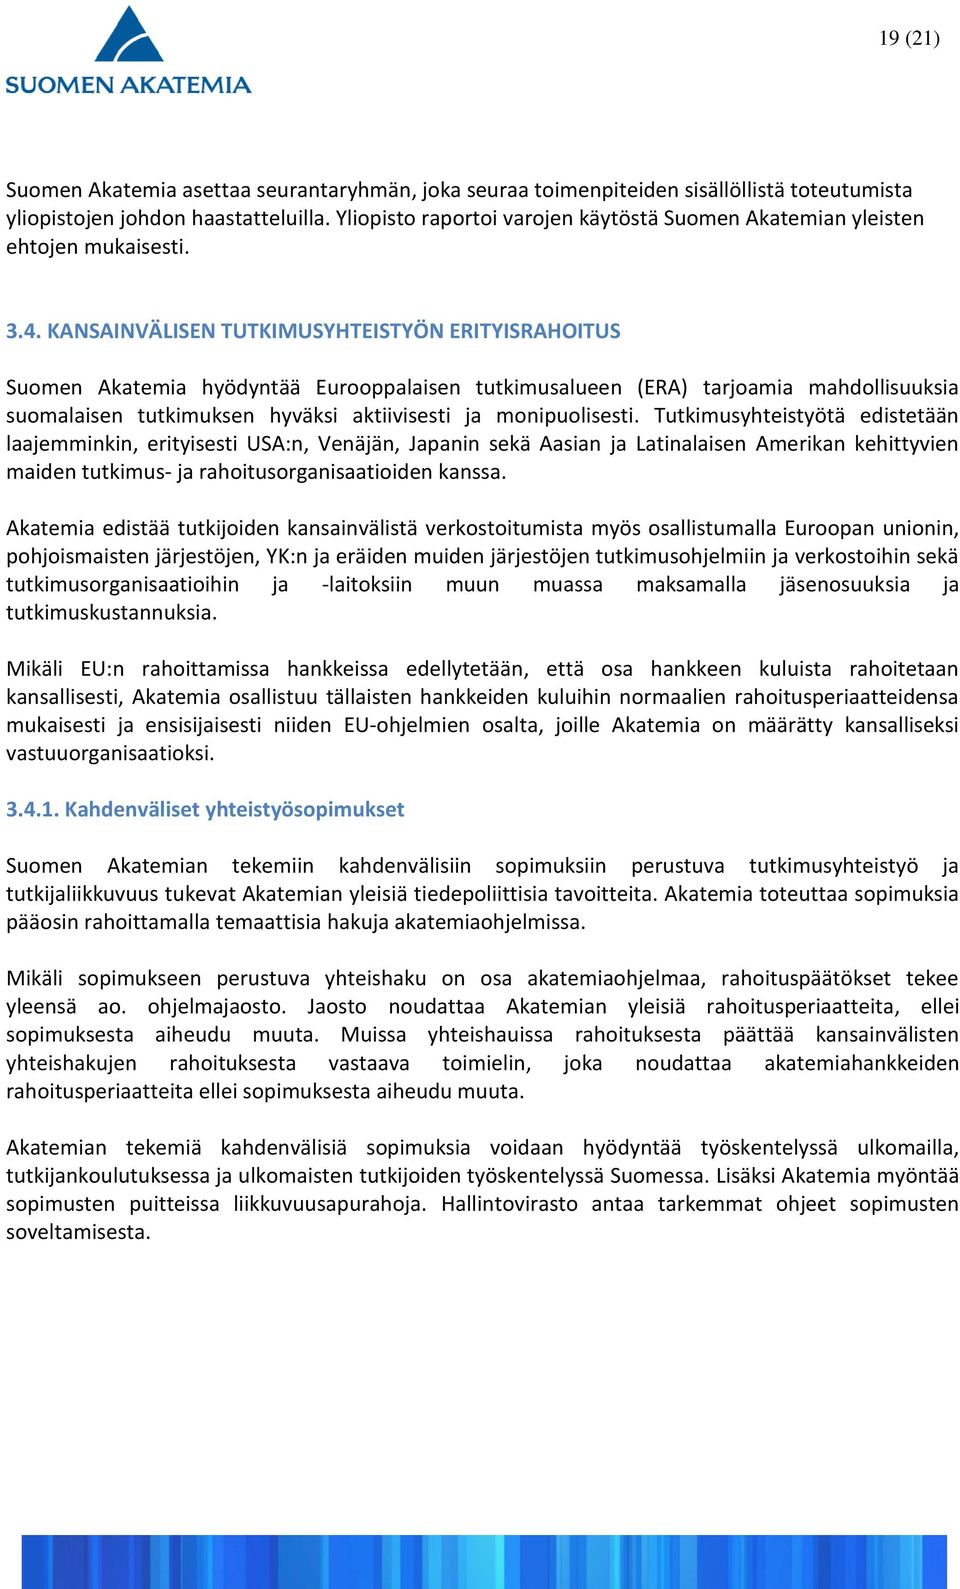 KANSAINVÄLISEN TUTKIMUSYHTEISTYÖN ERITYISRAHOITUS Suomen Akatemia hyödyntää Eurooppalaisen tutkimusalueen (ERA) tarjoamia mahdollisuuksia suomalaisen tutkimuksen hyväksi aktiivisesti ja